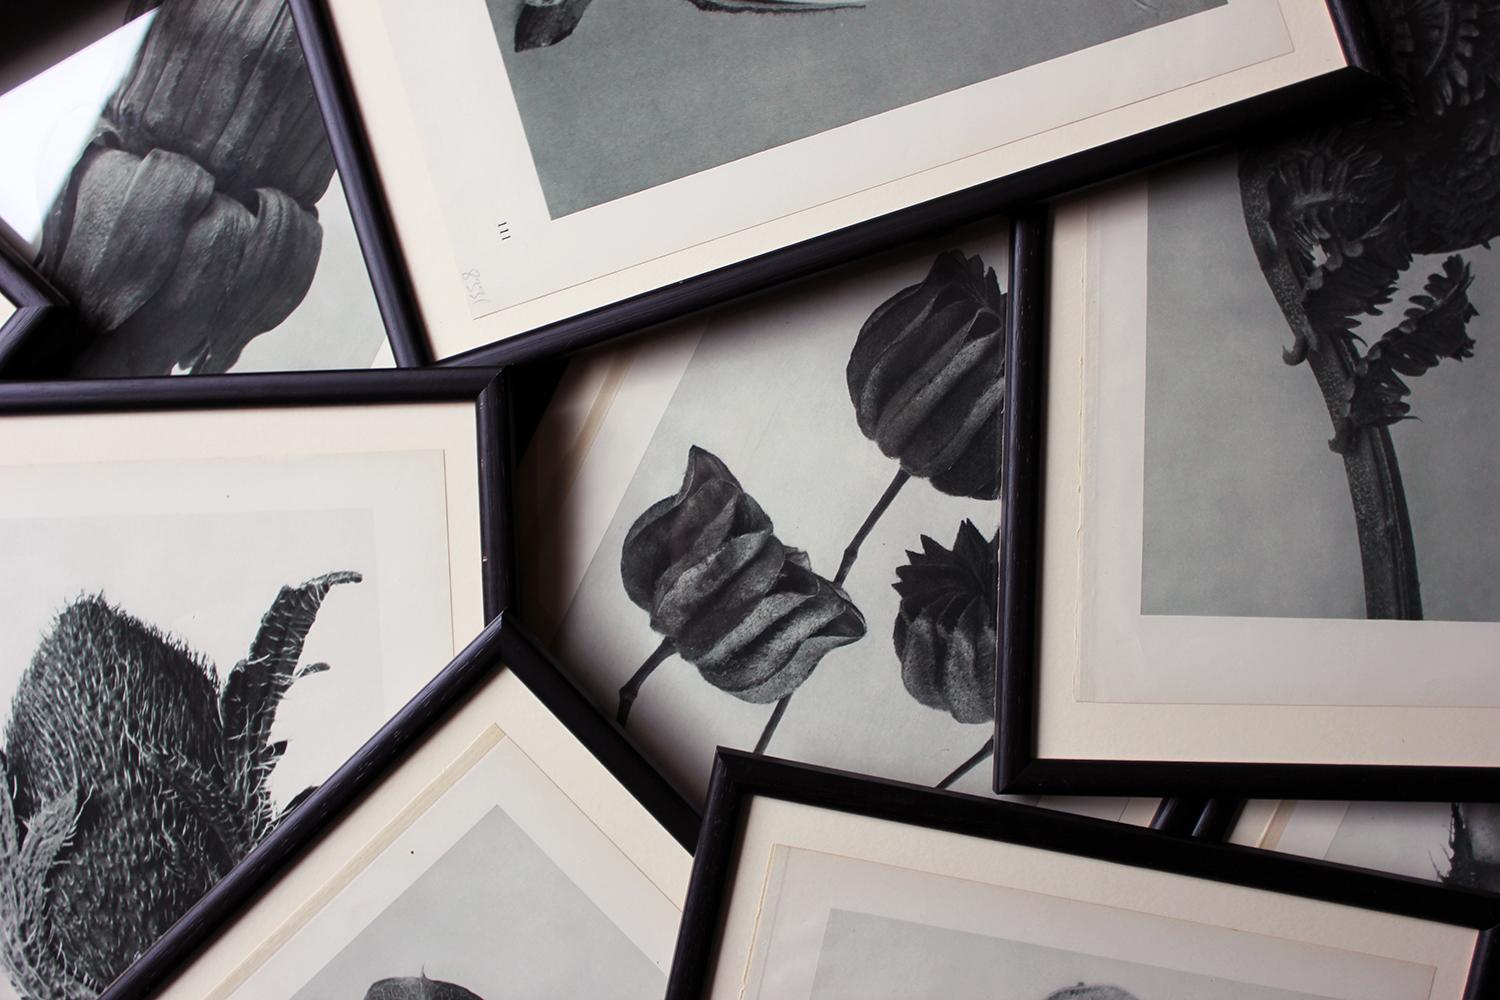 Paper Group of Twelve Framed Botanical Photogravures by Karl Blossfeldt, Berlin, 1929